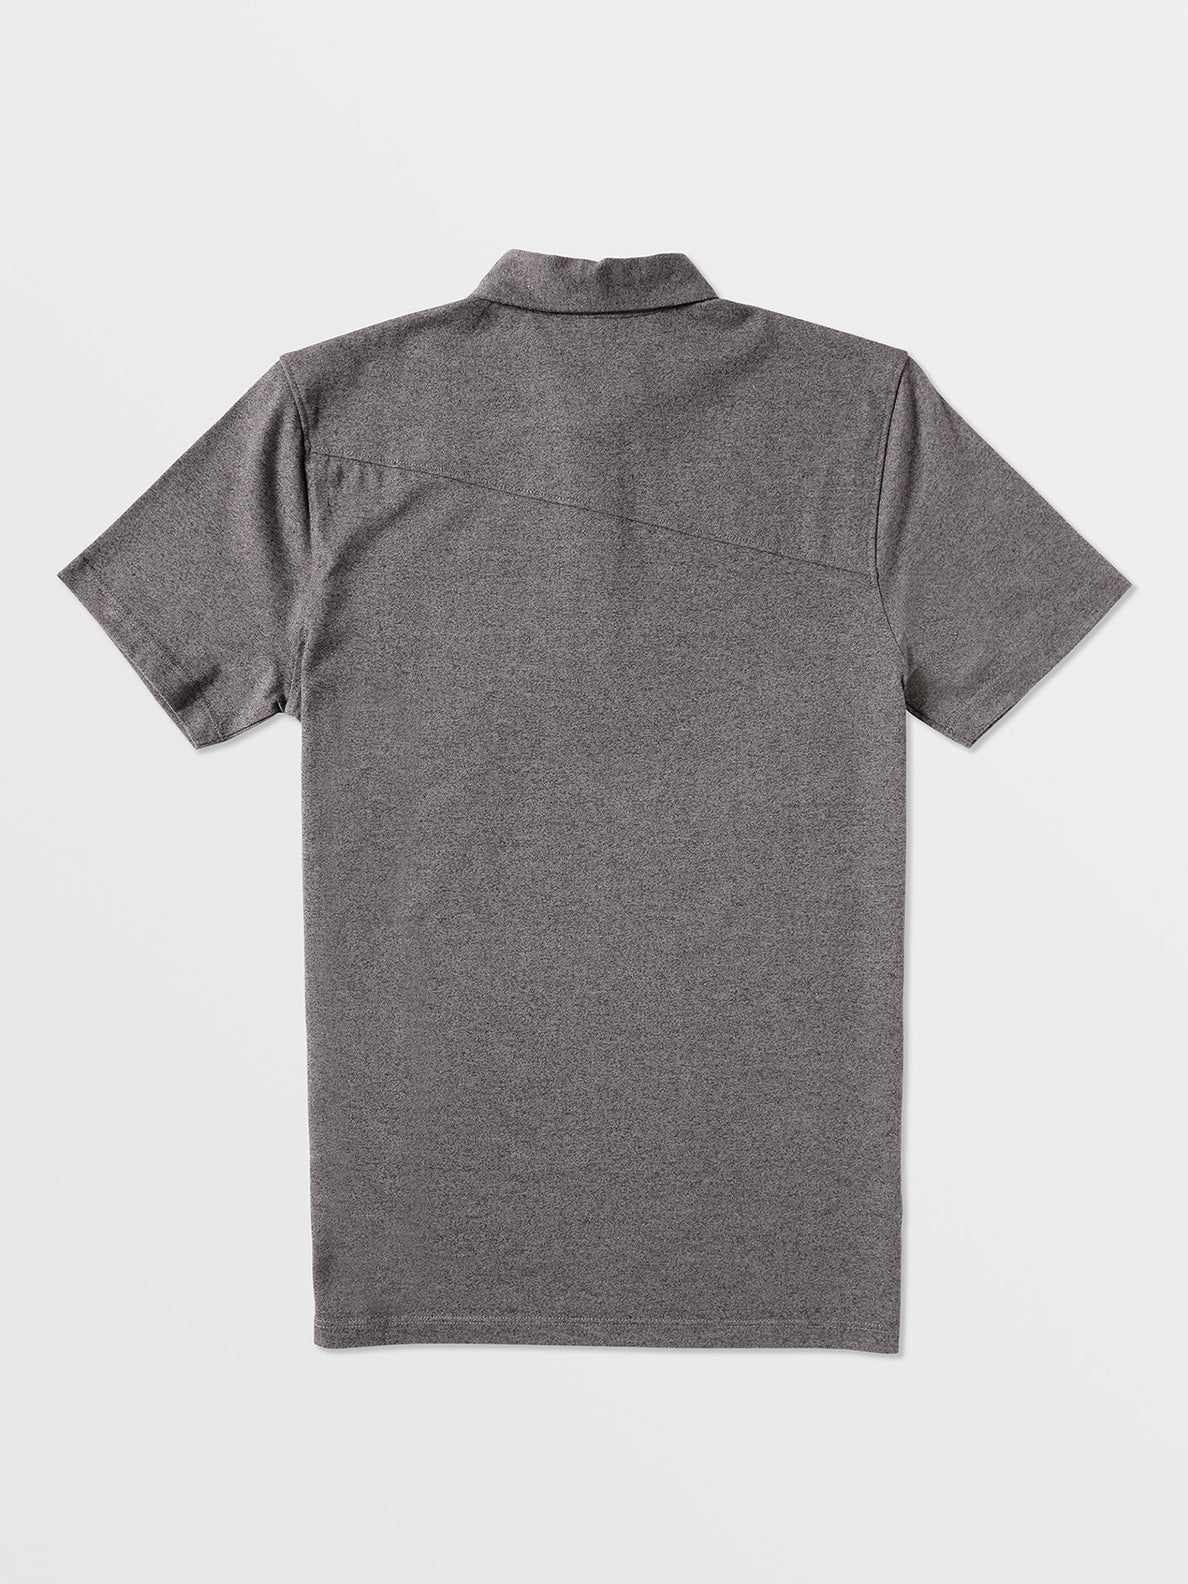 Wowzer Polo Short Sleeve Shirt - Stealth